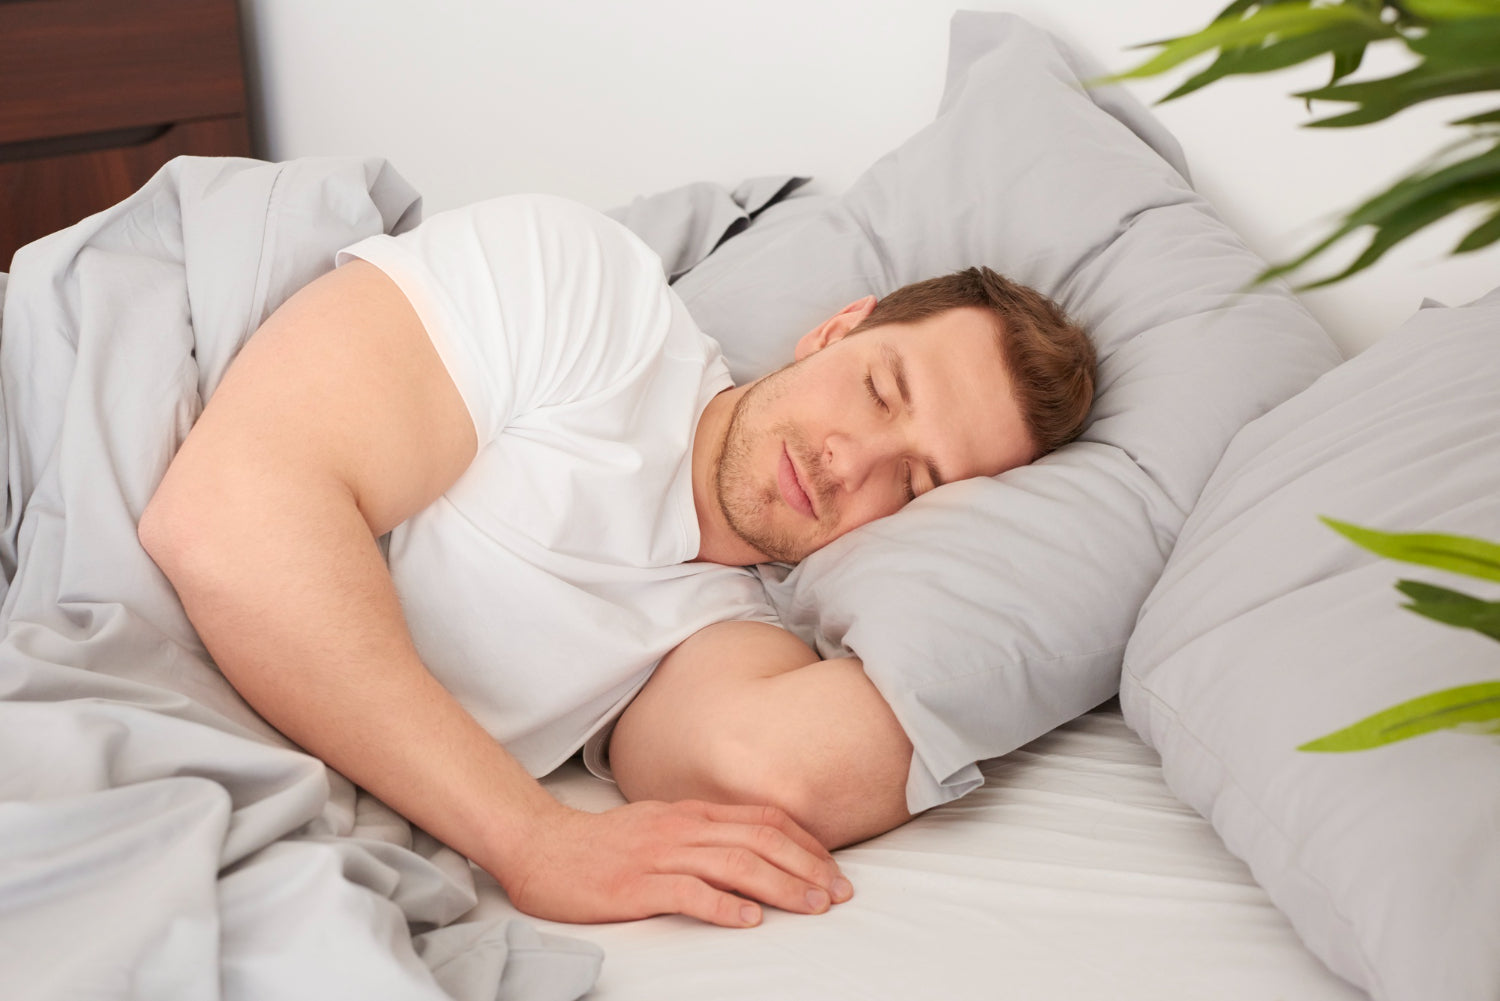 7 Proven Ways to Get Better Sleep Tonight